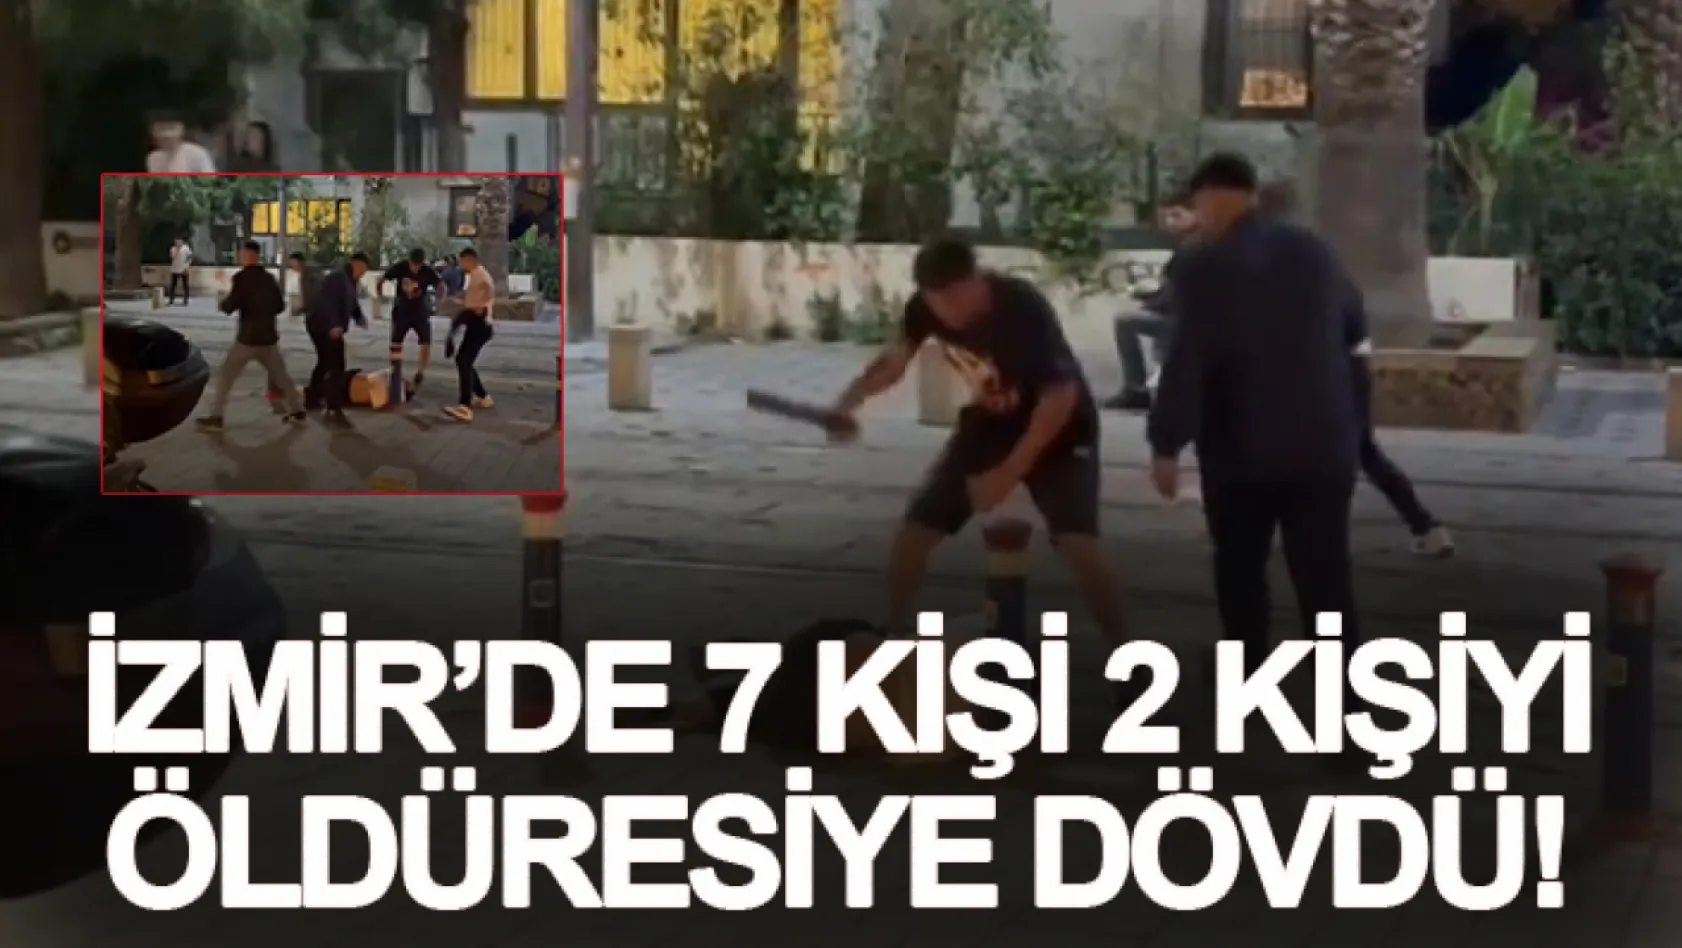 İzmir'de 7 kişi 2 kişiyi öldüresiye dövdü!